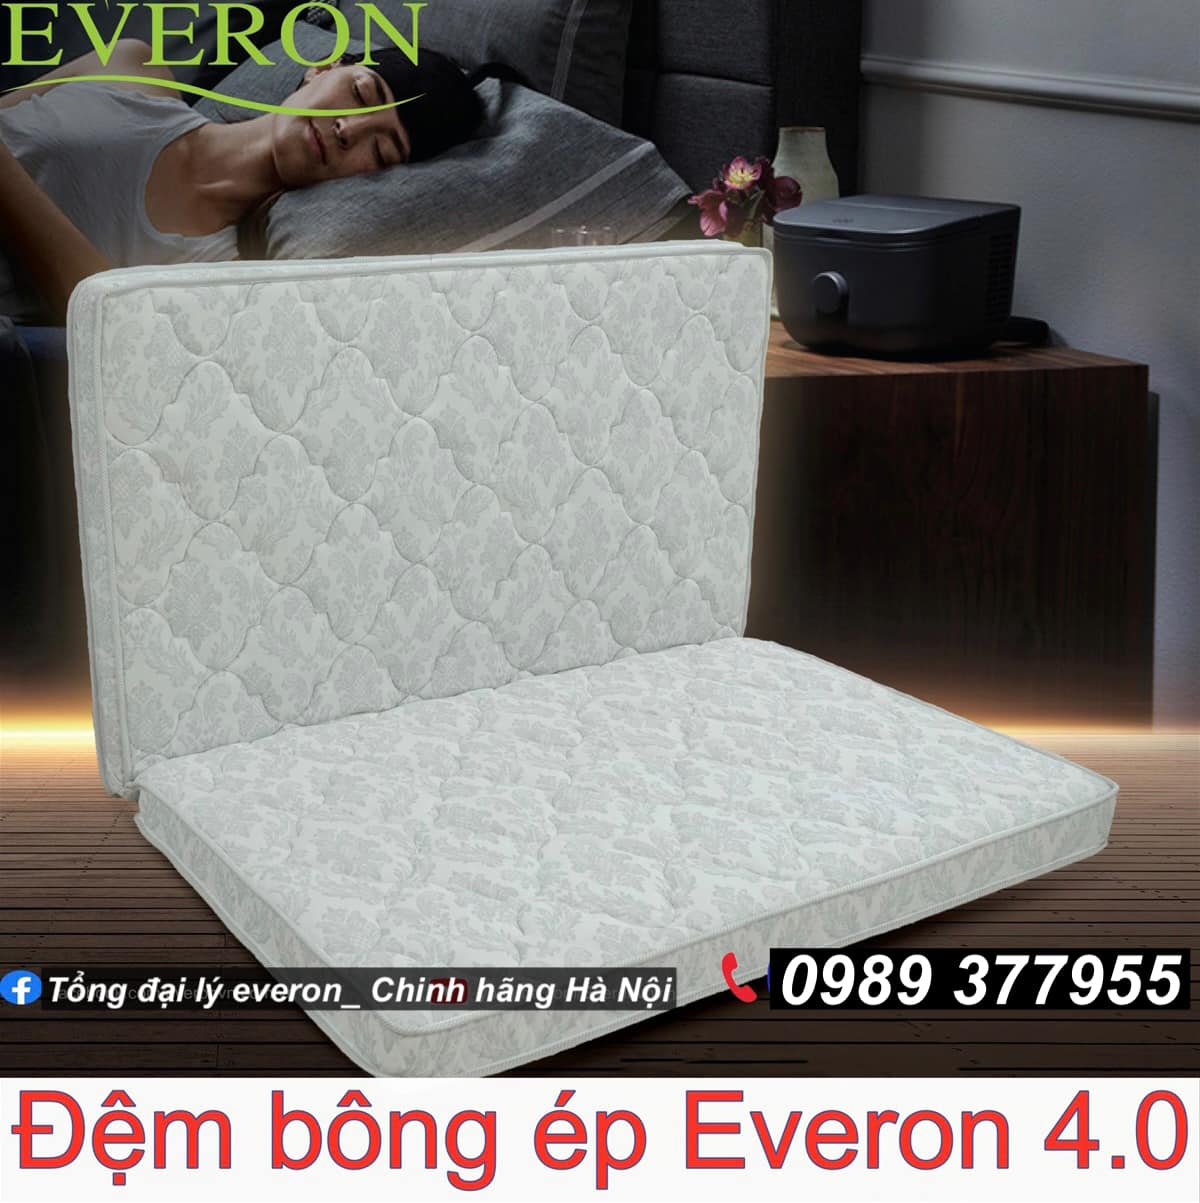 Everon chính hãng ra mắt sản phẩm mới 